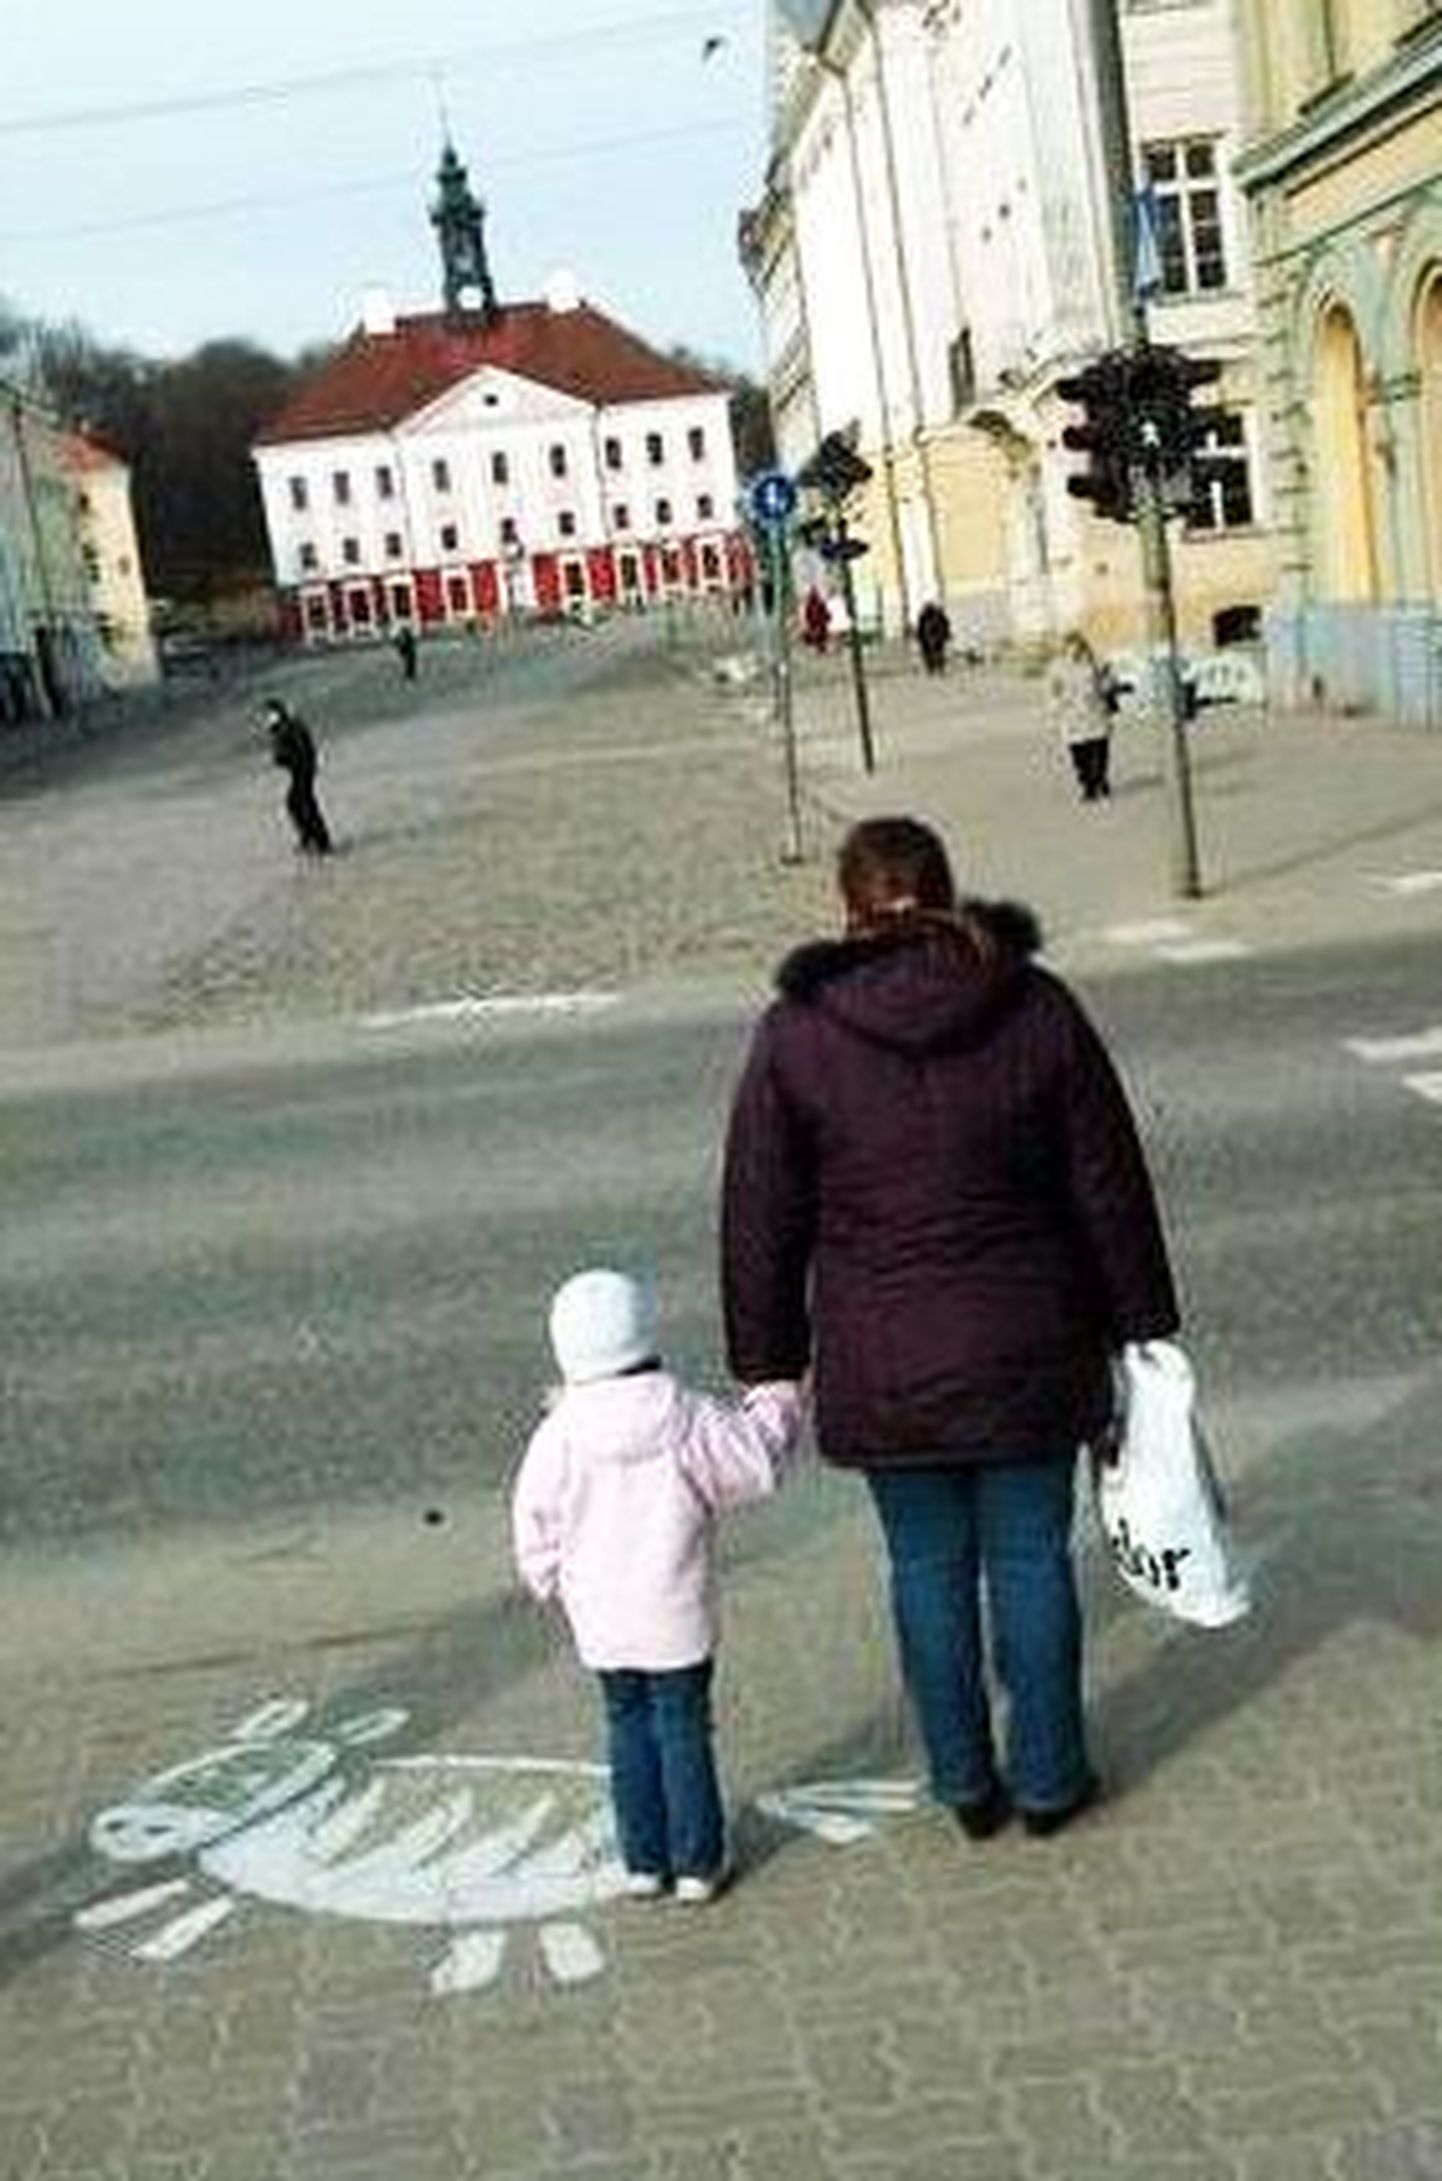 Tallinna linn märgistab vöötradasid, et tagada laste ohutus.